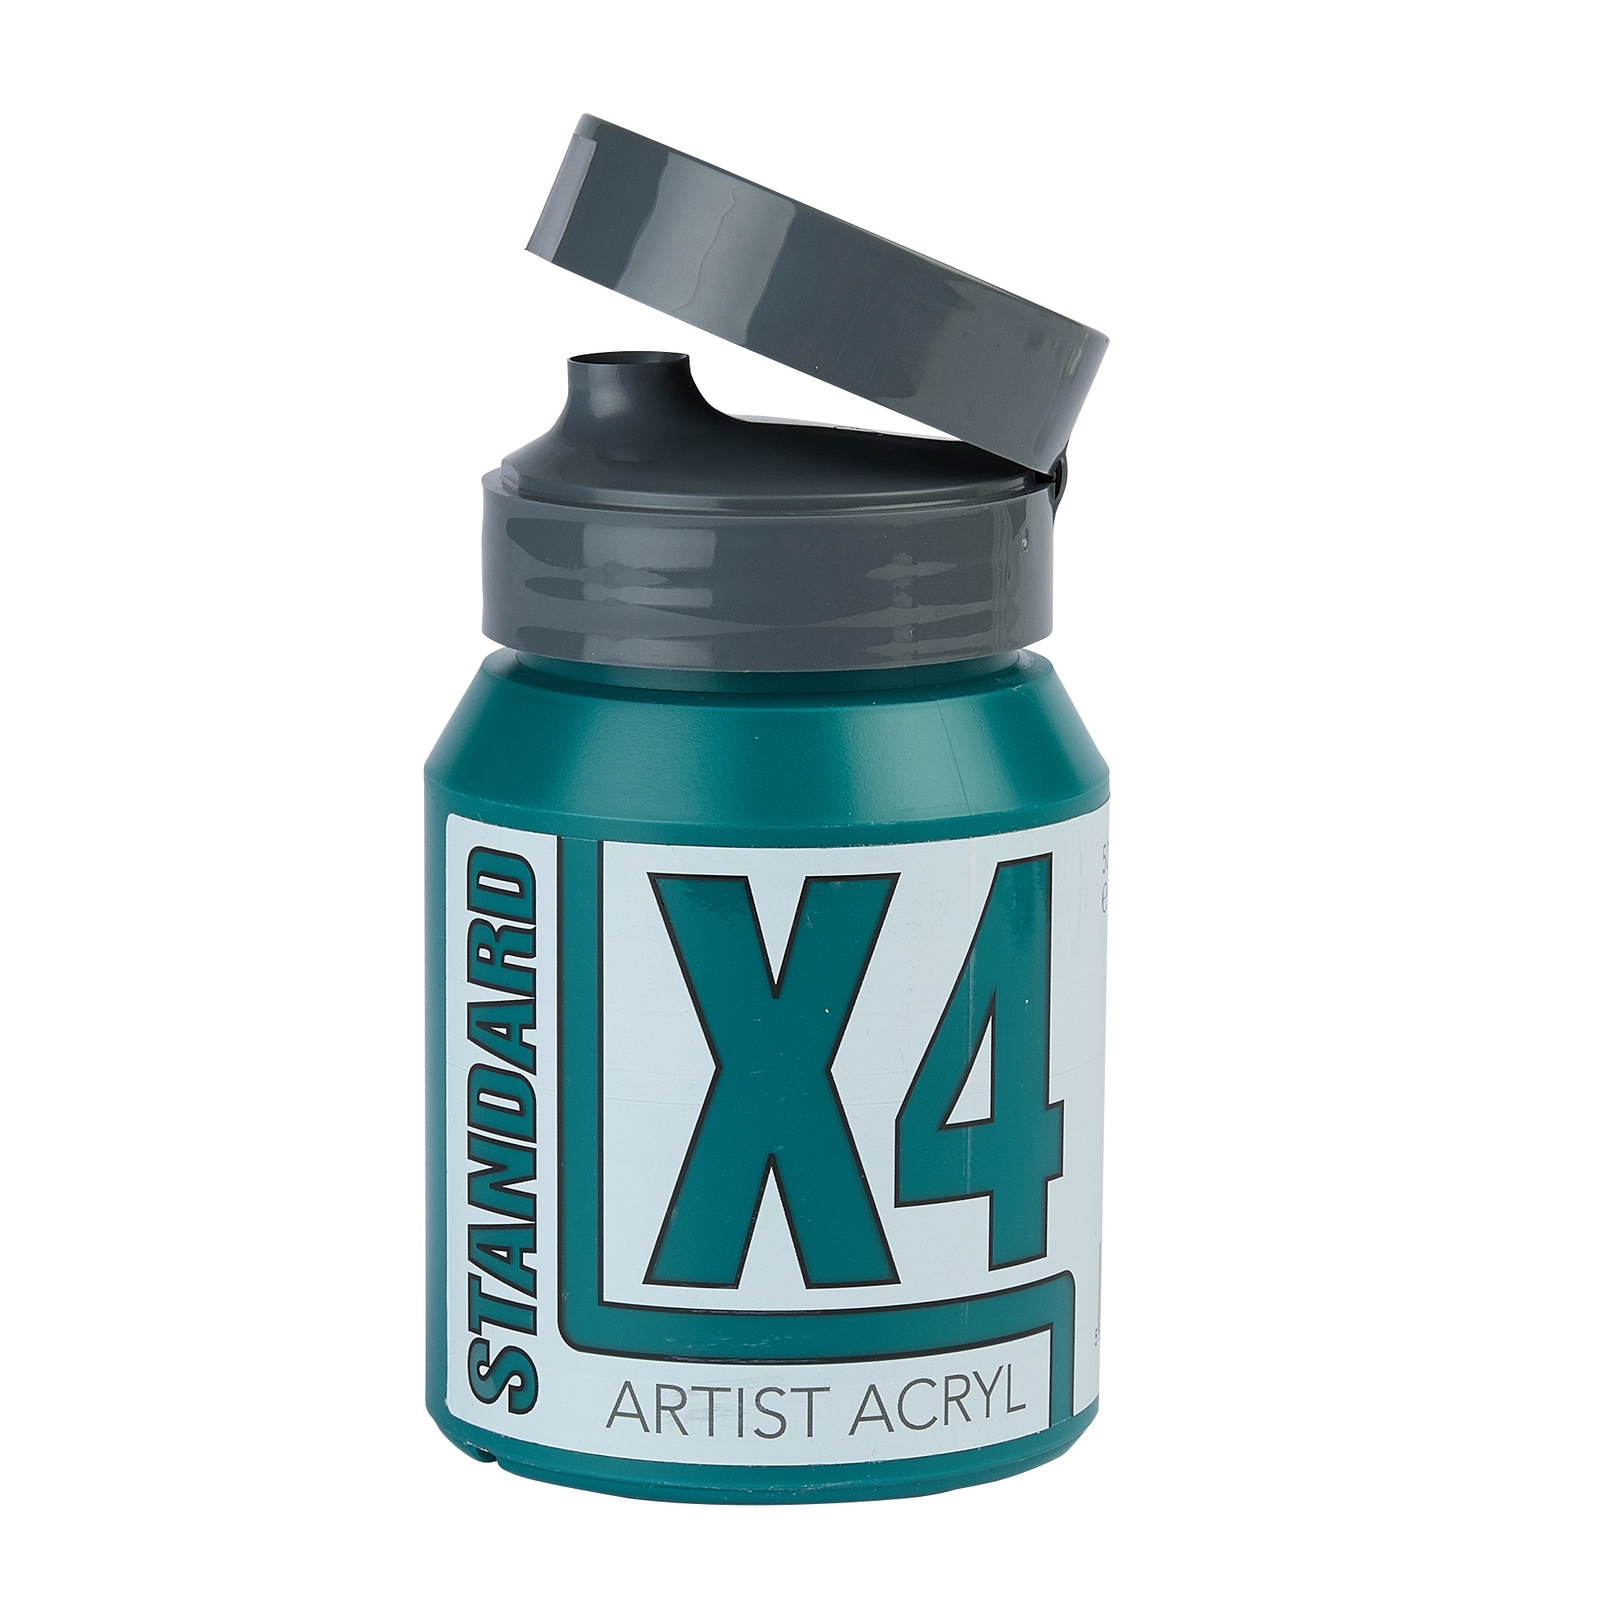 Specialist Crafts X4 Standard Viridian Acryl/Acrylic Paint - 500ml - Each